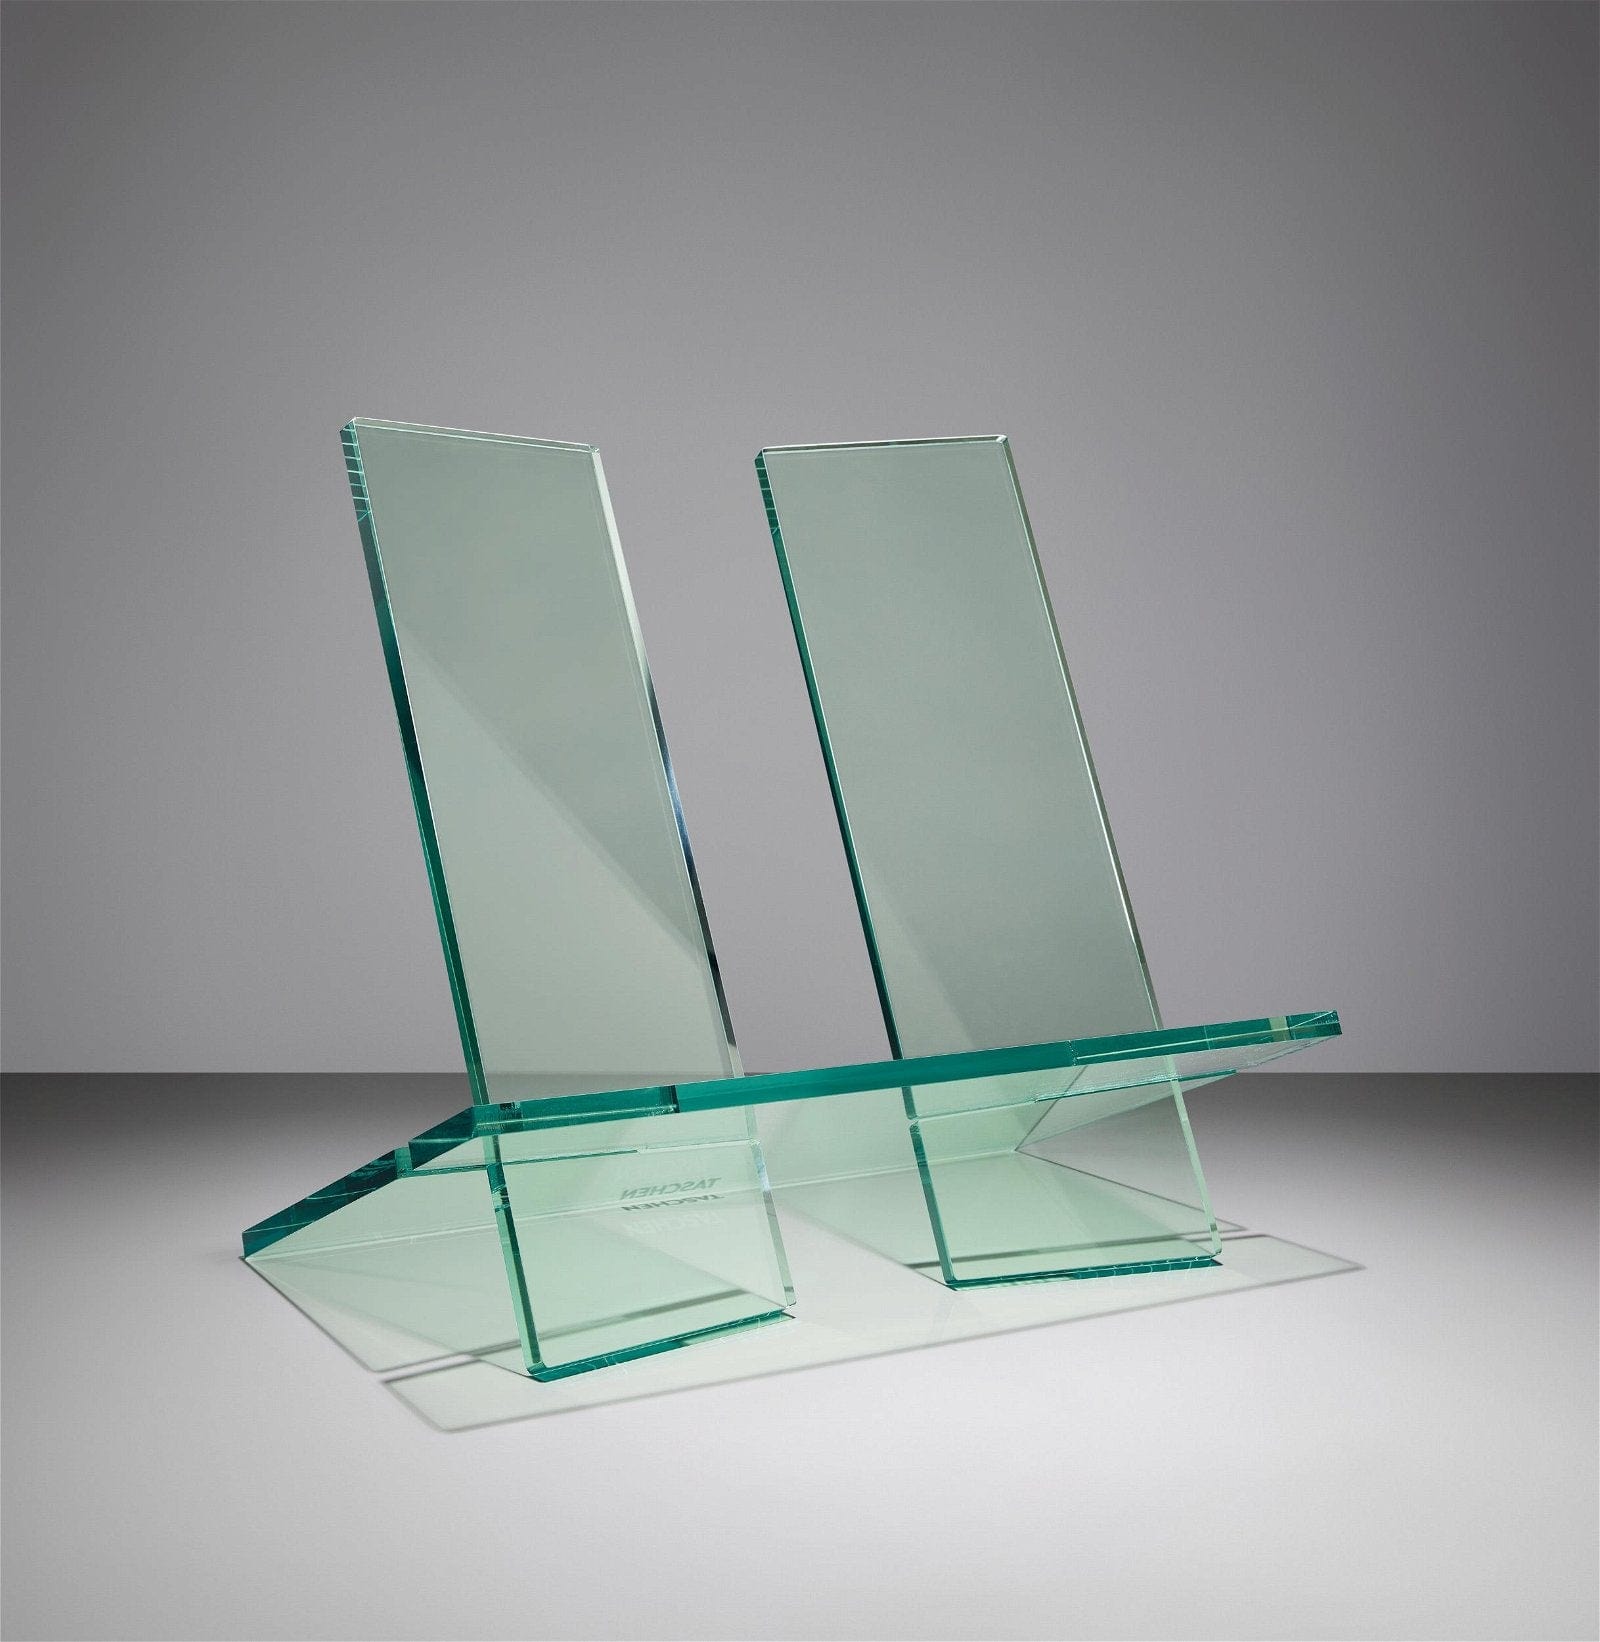 Suport pentru carti, Taschen Bookstand Display Crystal, Size XL Verde, L41xl28xH45 cm